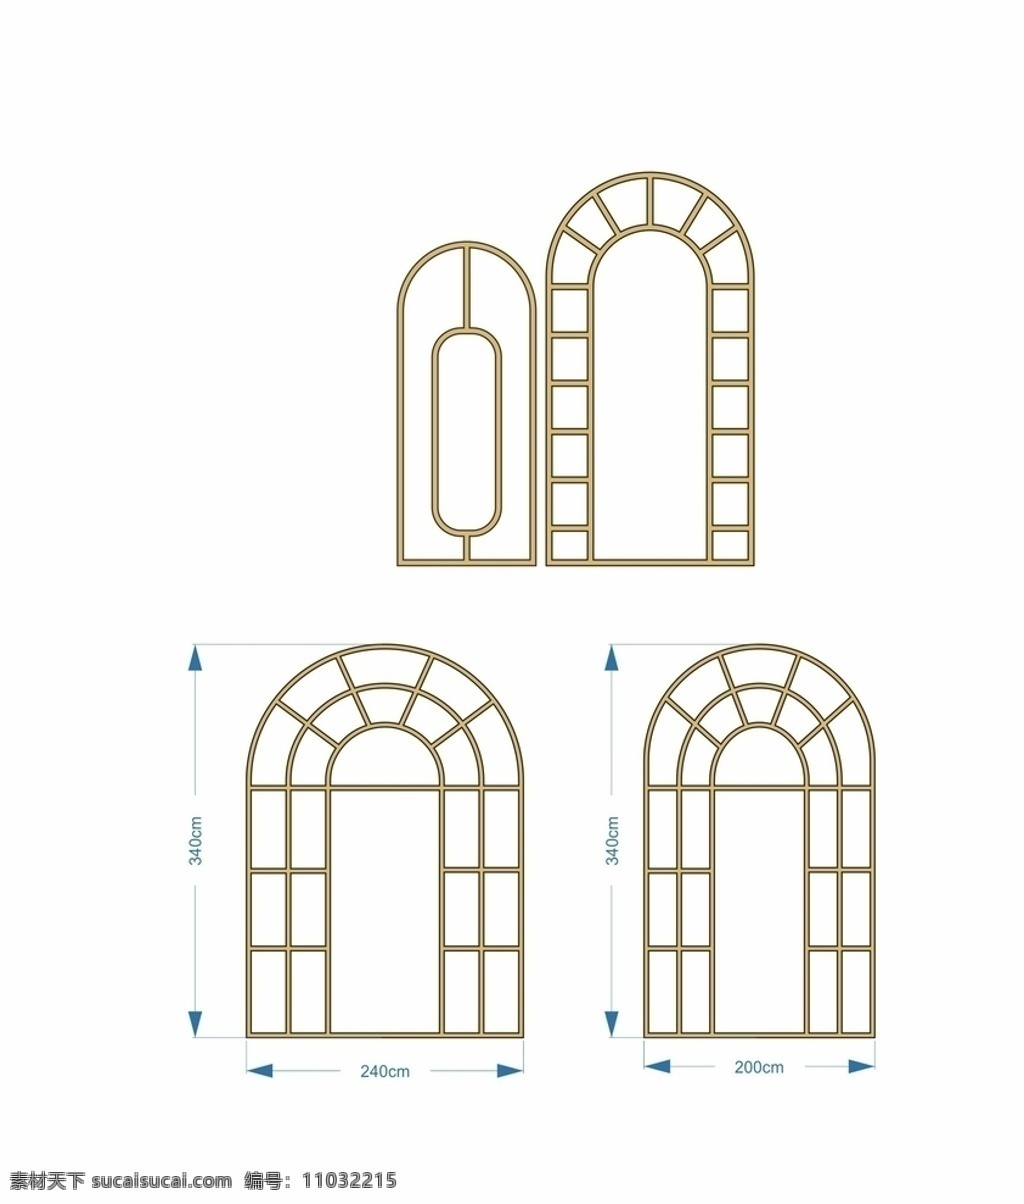 婚礼道具 铁艺 pvc雕刻 拱 婚礼 道具 pvc 雕刻 拱门 标志图标 其他图标